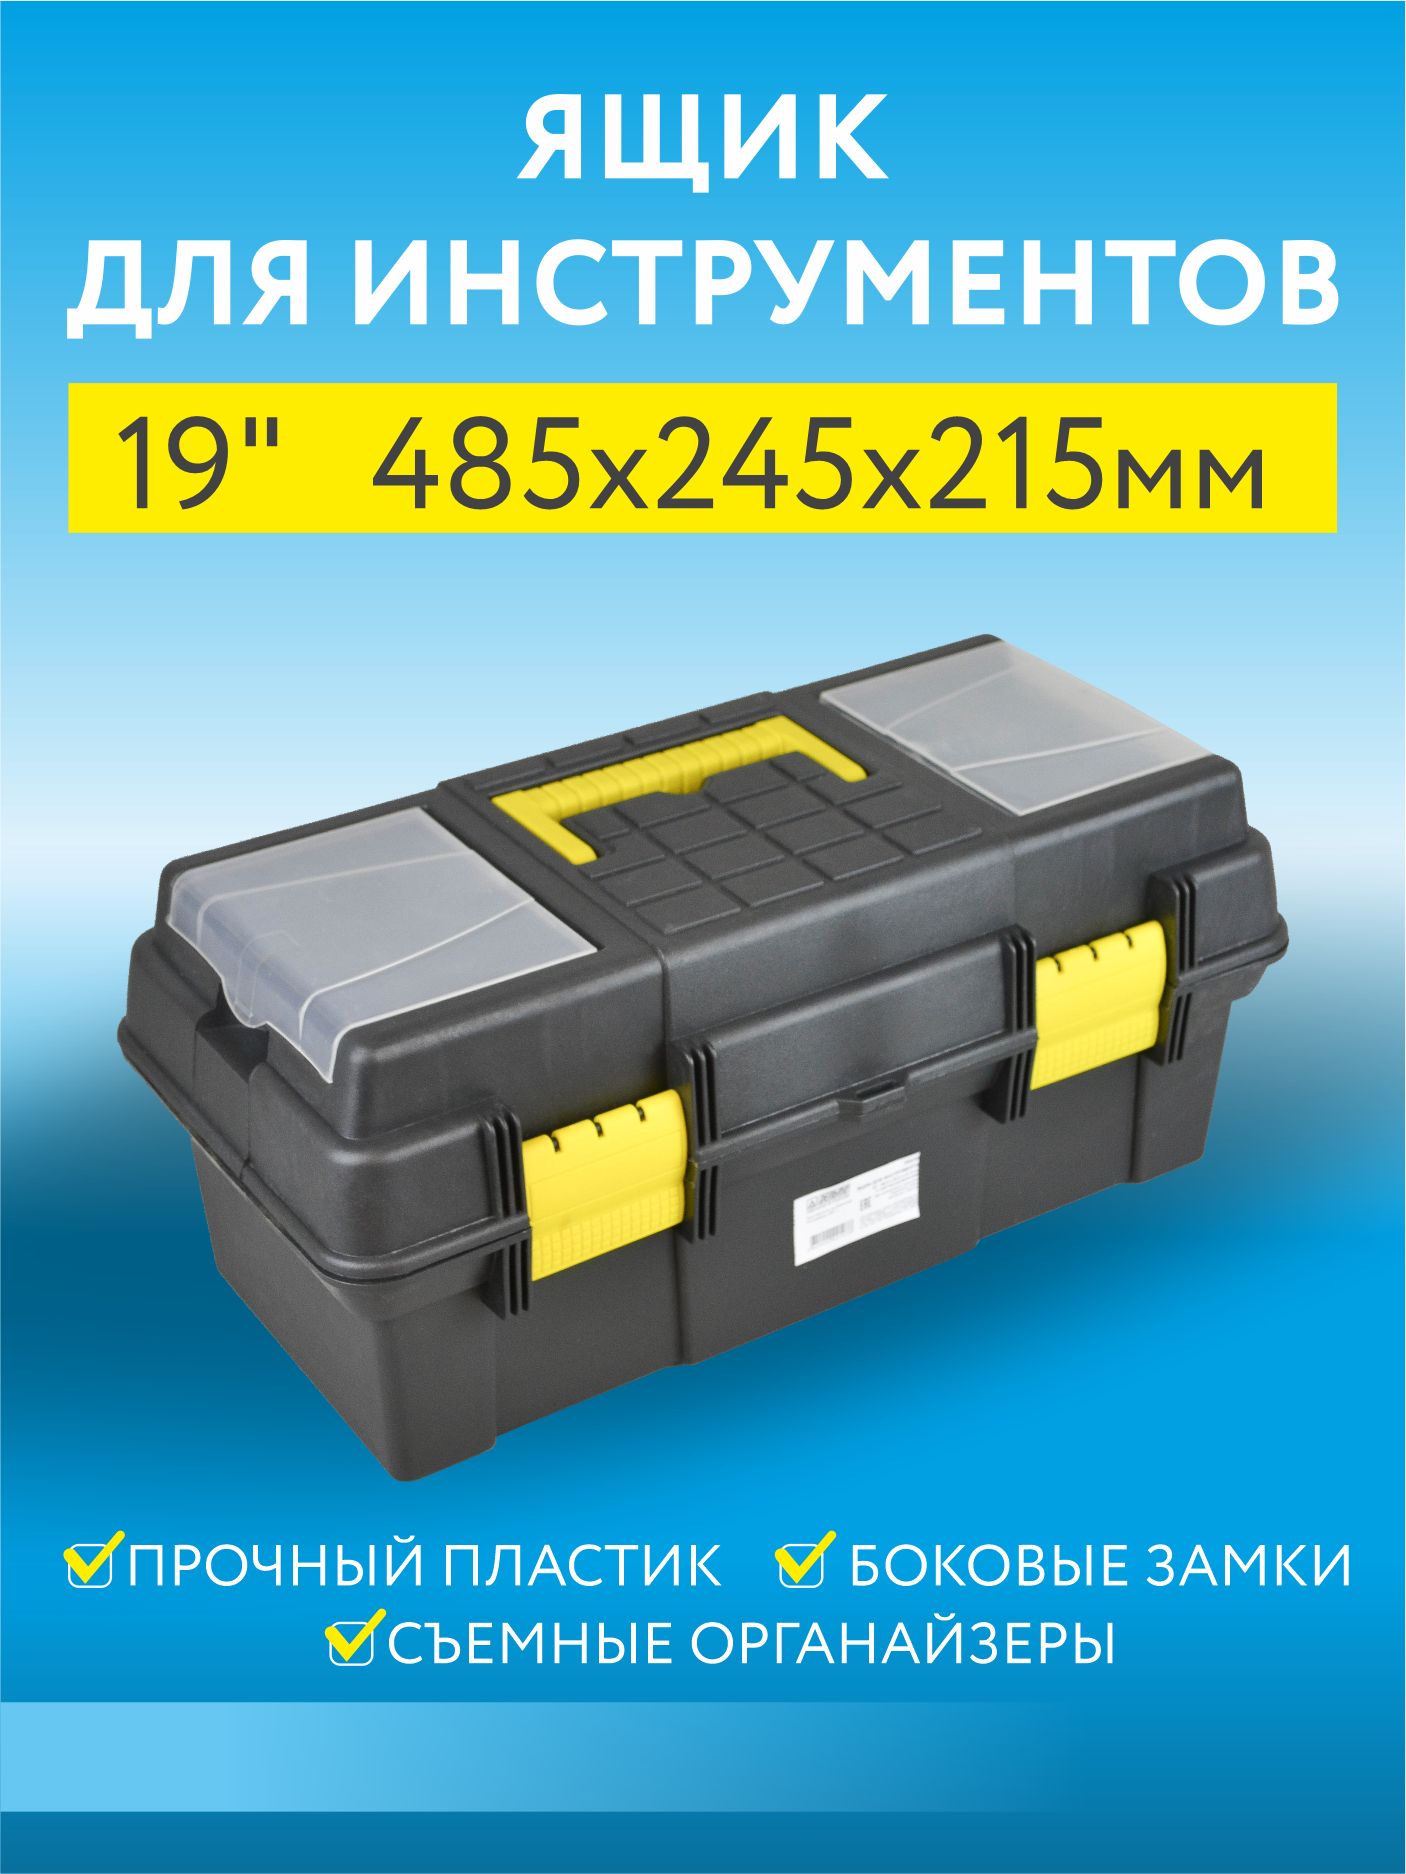 Ящик для инструментов Пластик система Д20230 пластиковый 19